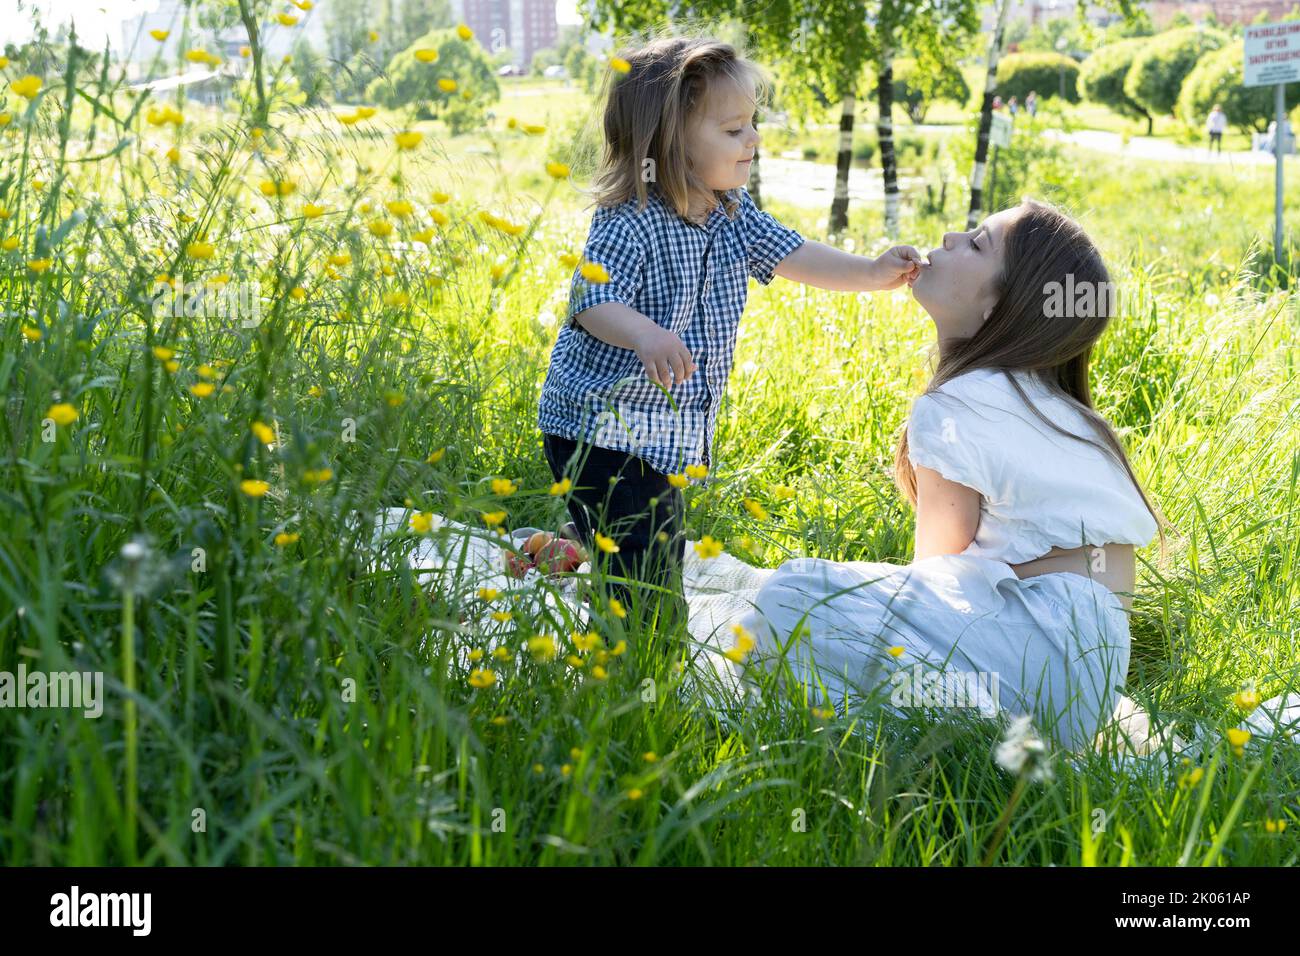 Fratello e sorella giocano nel parco tra l'erba verde. Fratello alimenta sorella. Picnic fuori città. Infanzia. Relazioni. Foto Stock